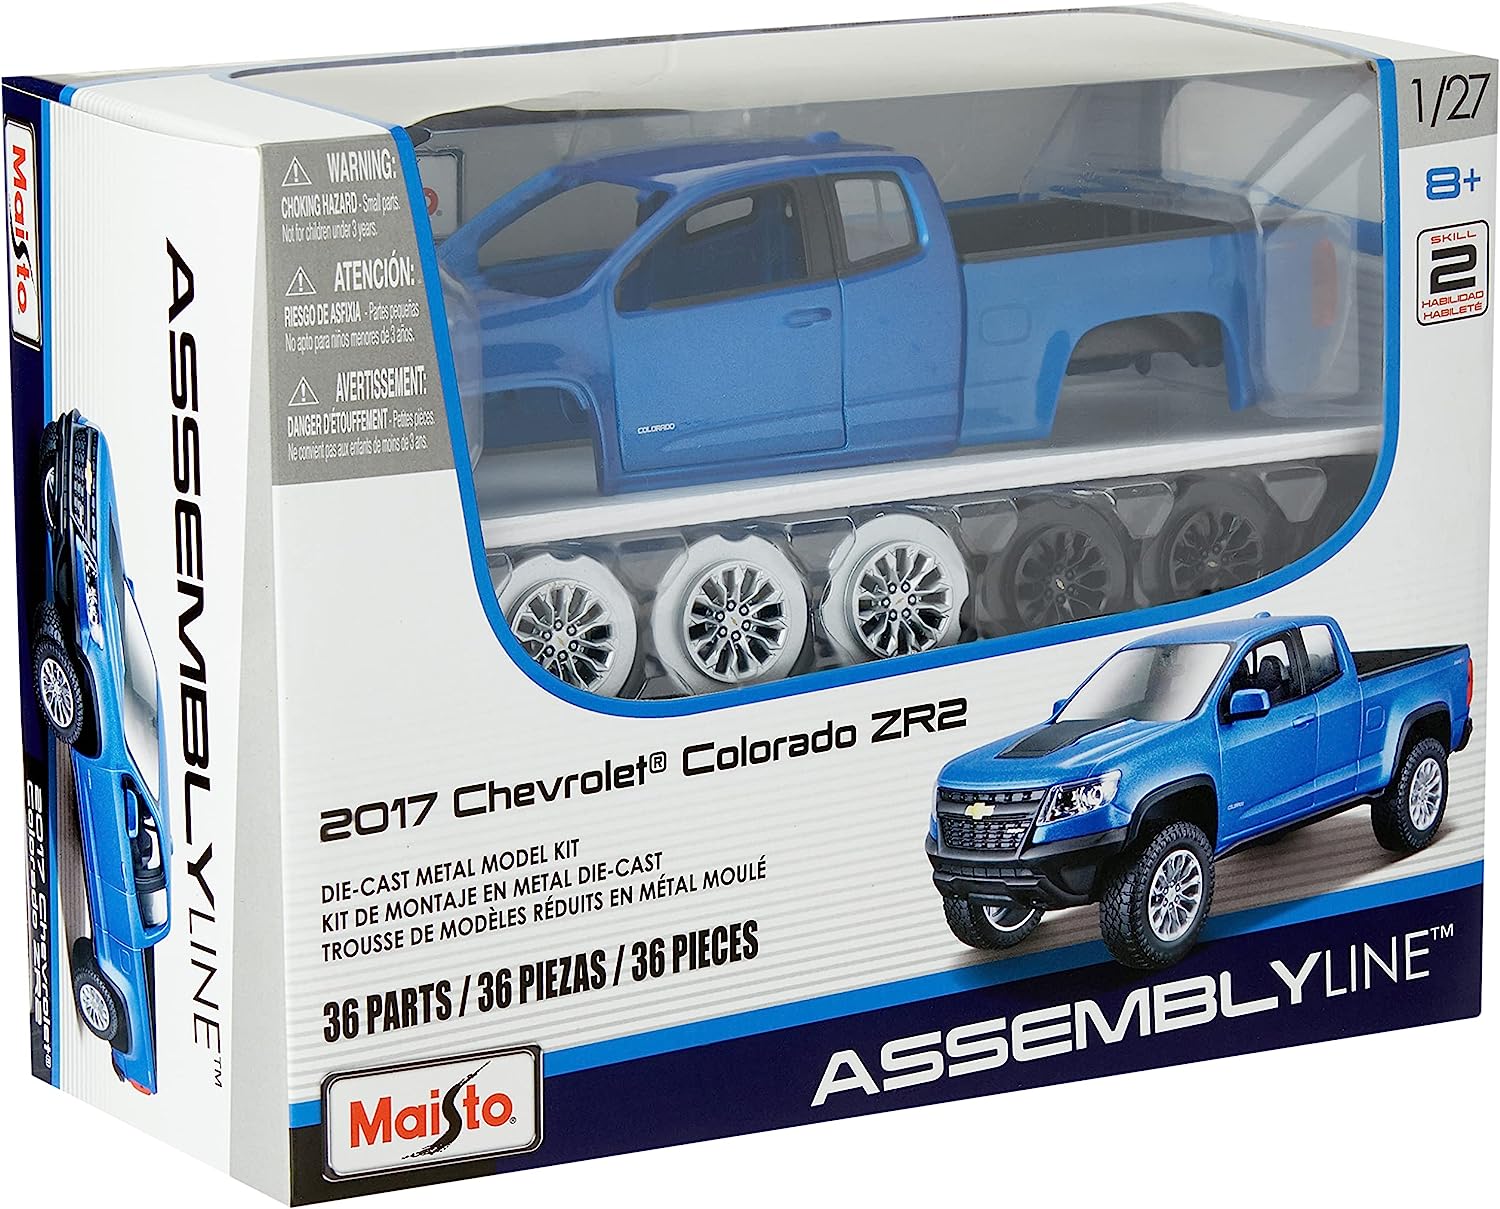 Maisto Auton Rakennussetti Koottava 2017 Chevrolet Colorado Zr2